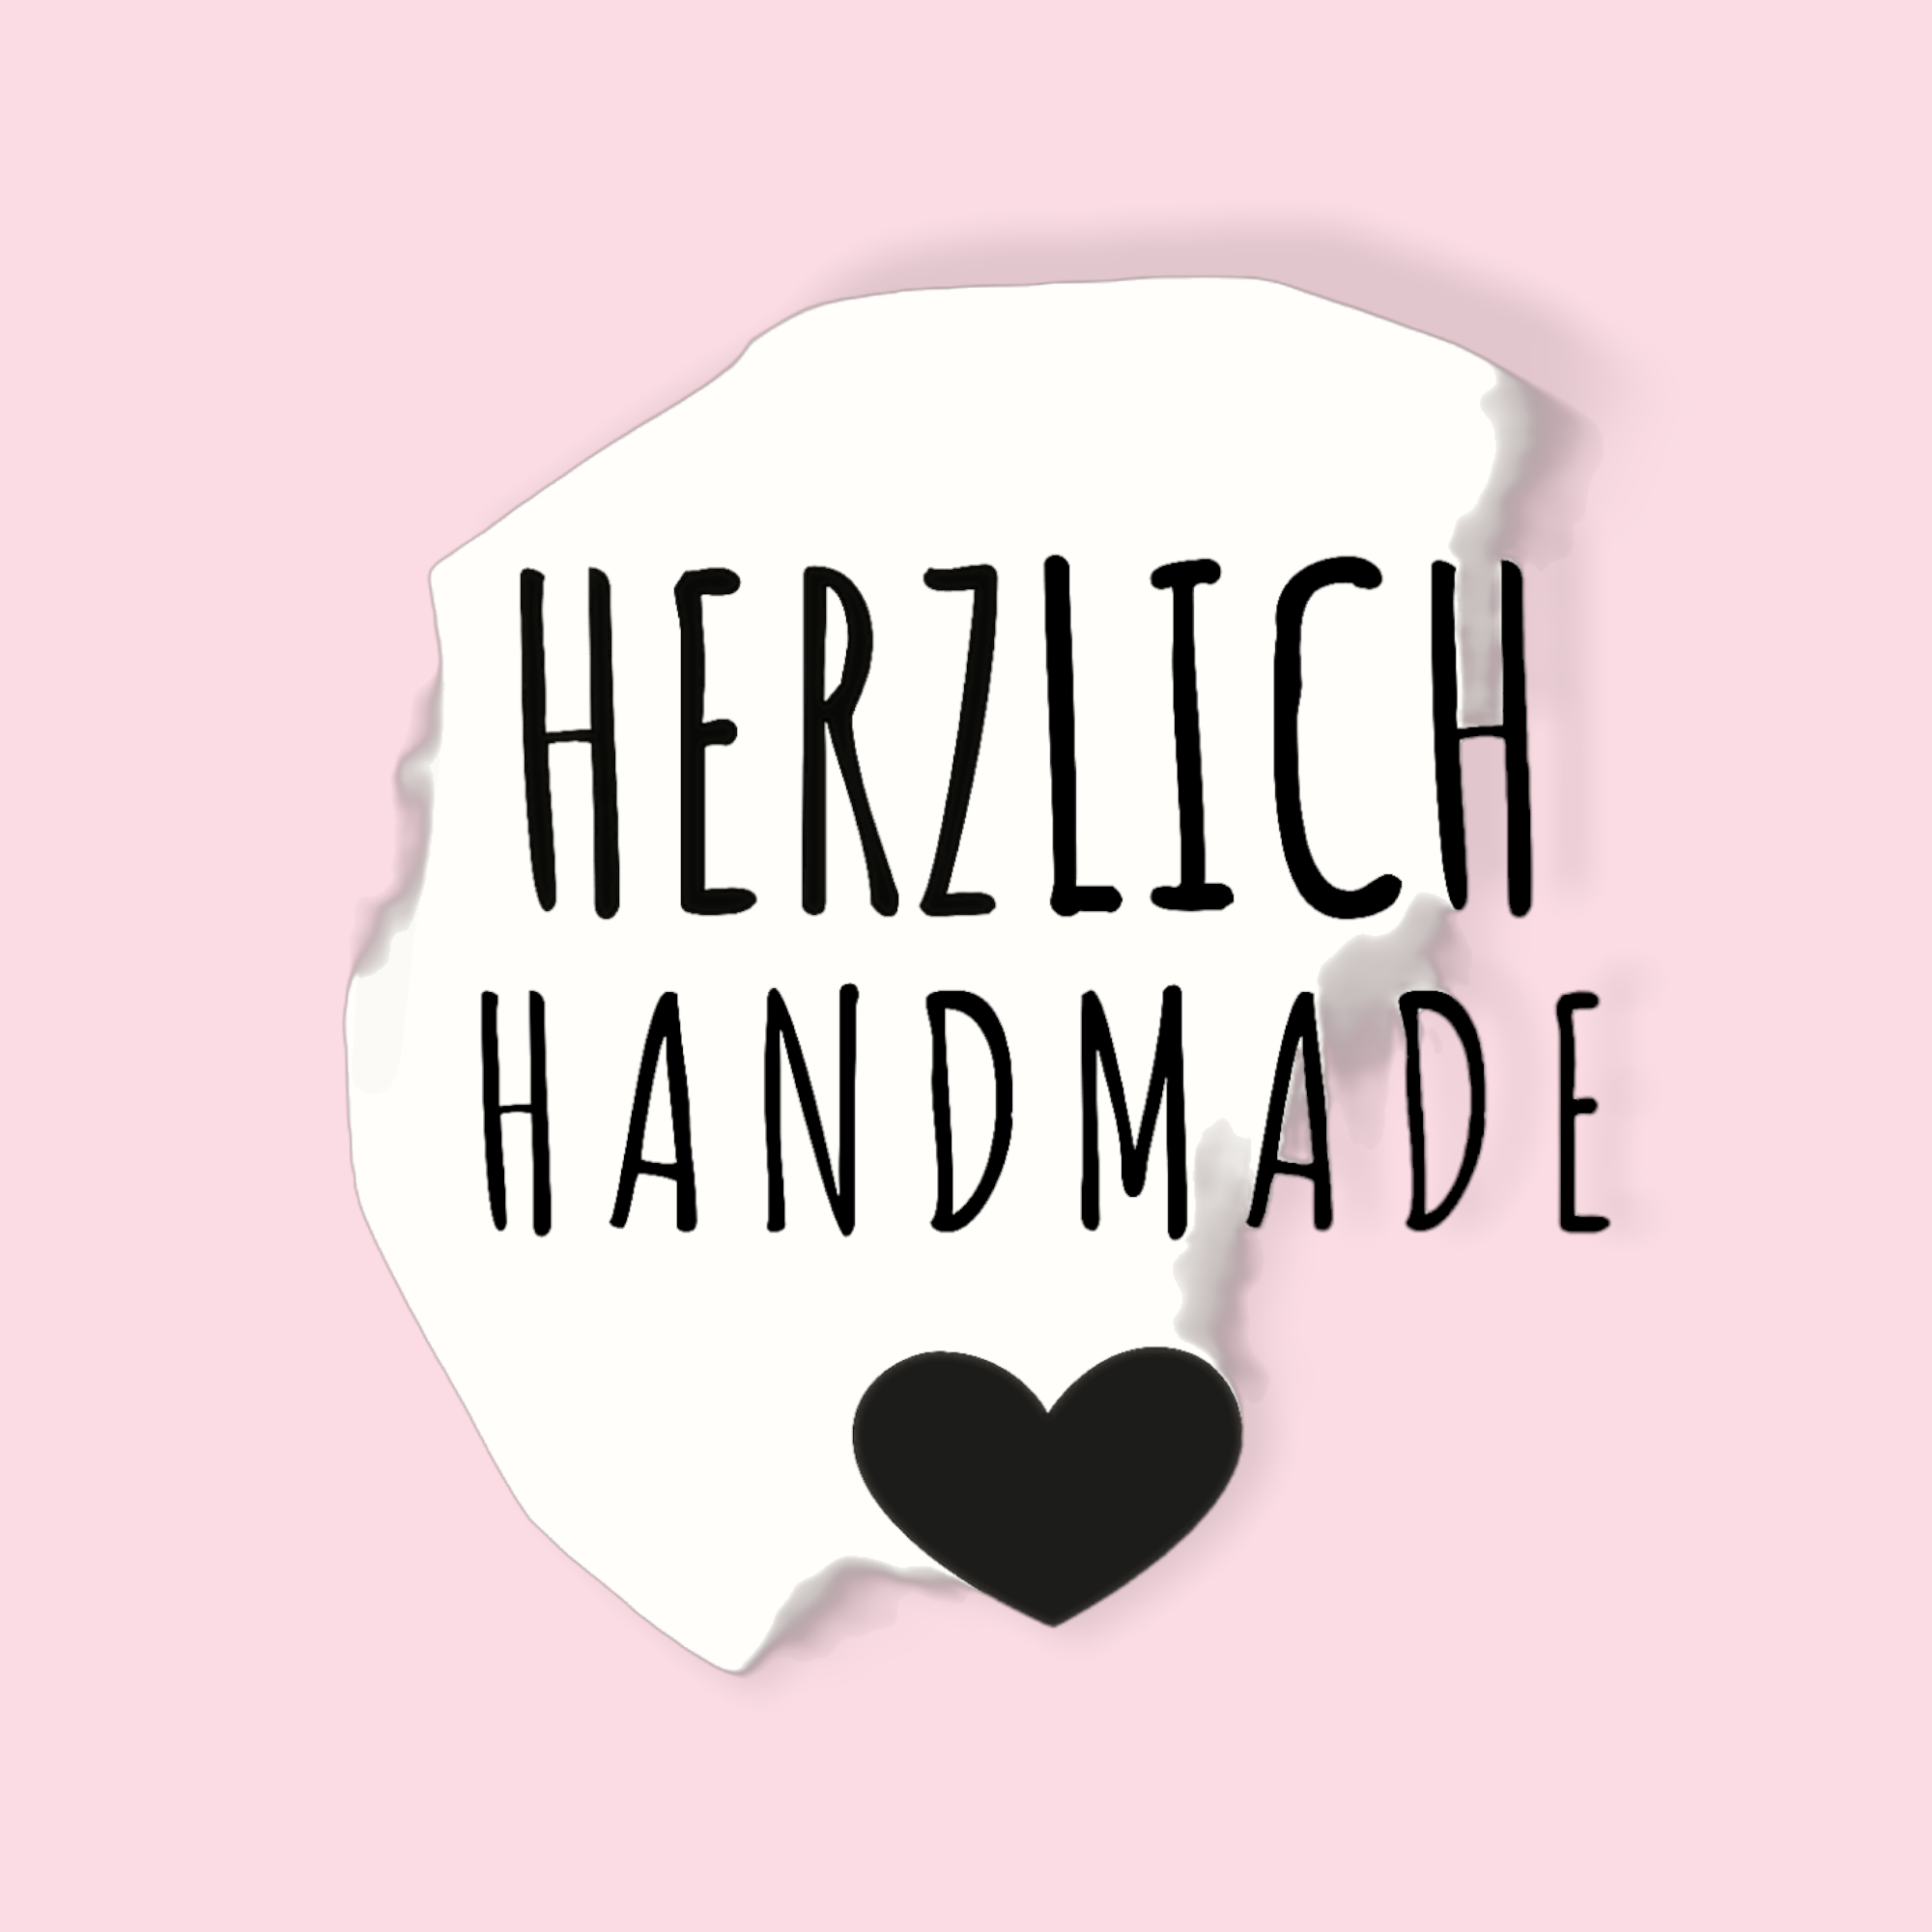 (c) Herzlich-handmade.de